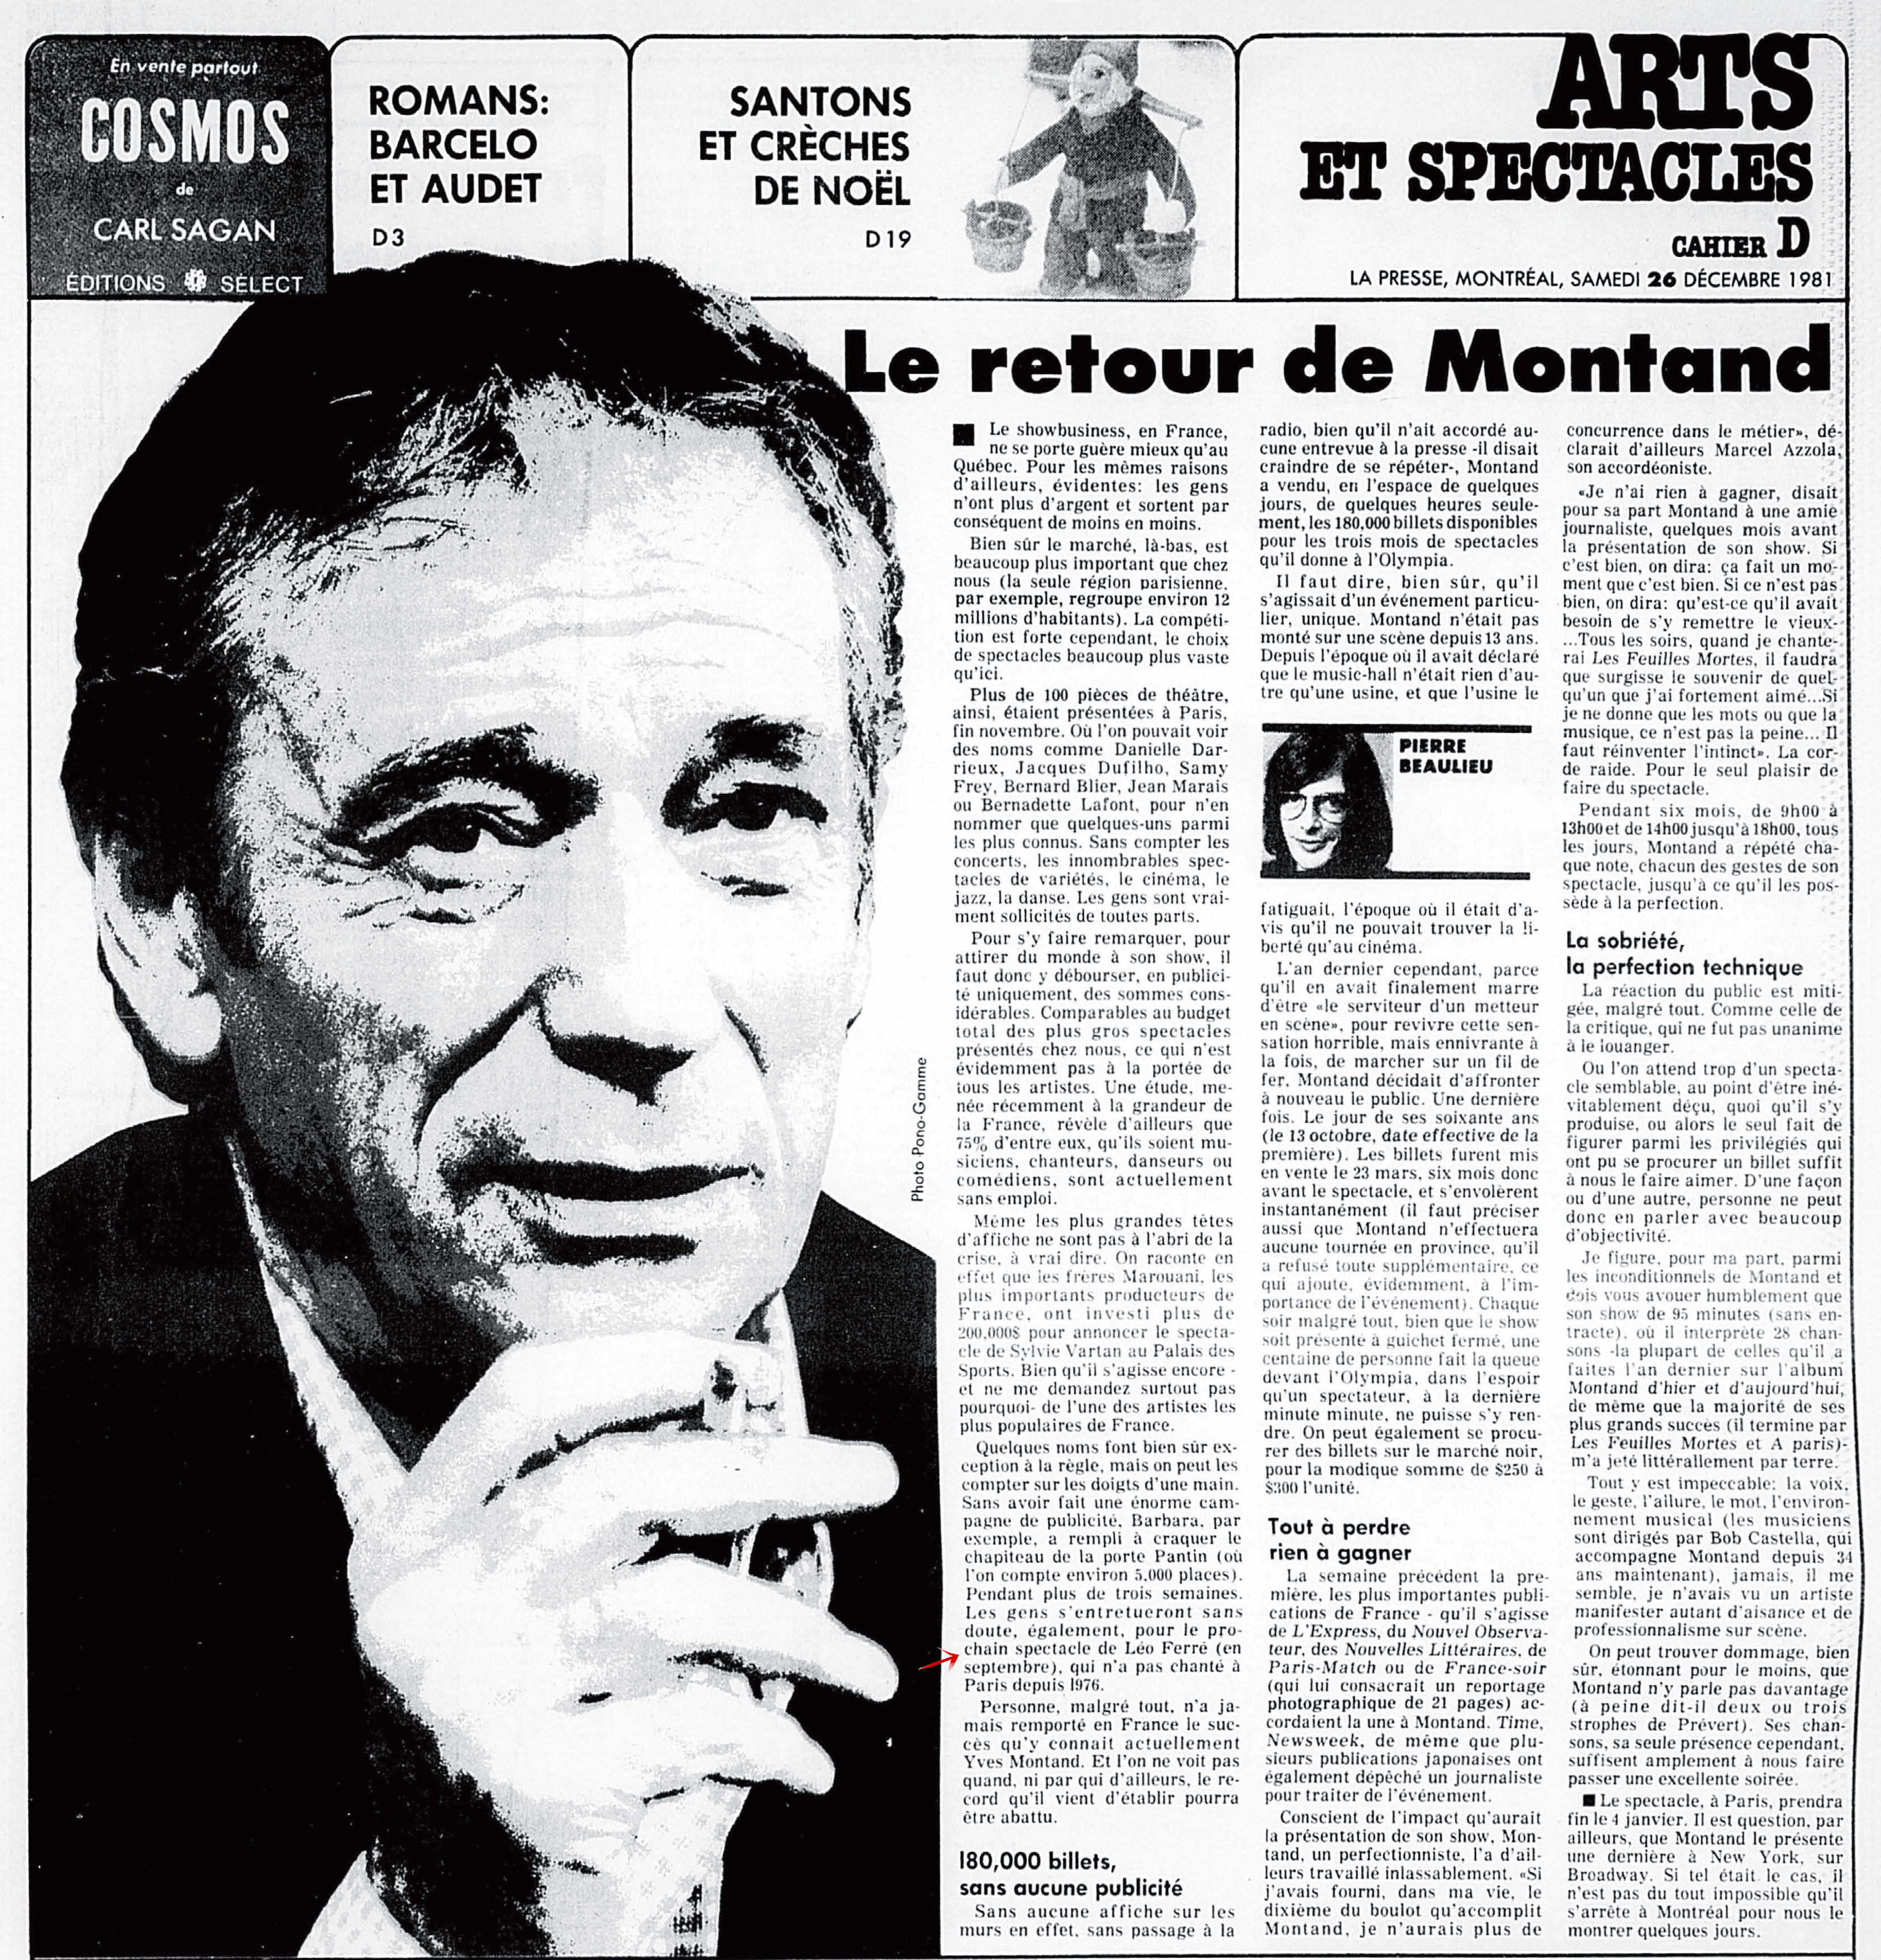 Léo Ferré - La Presse, 26 décembre 1981, D. Arts et spectacles